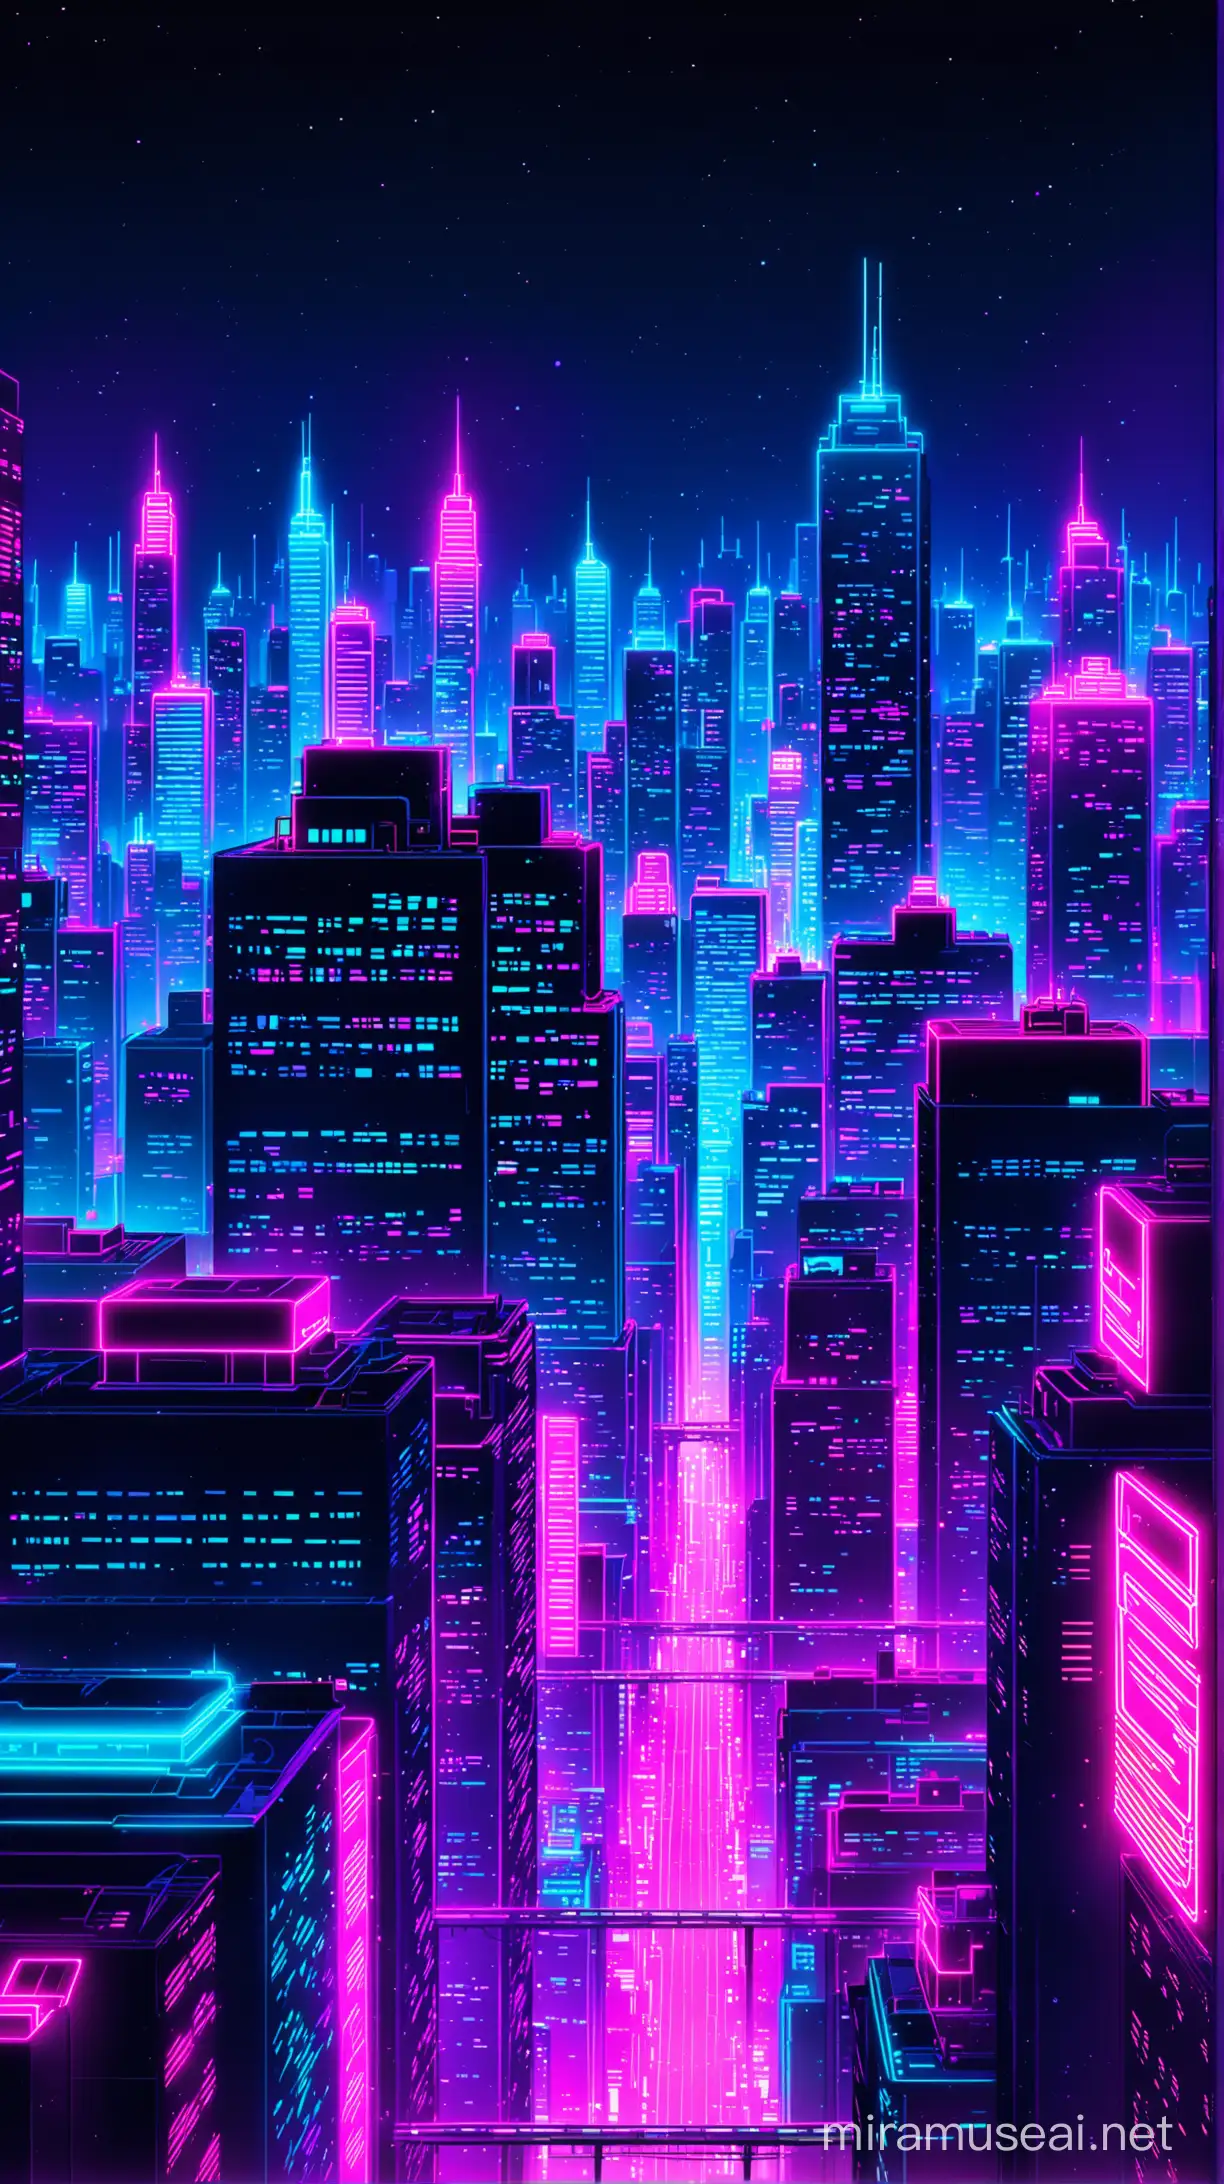 Vibrant Neon Cityscape at Night